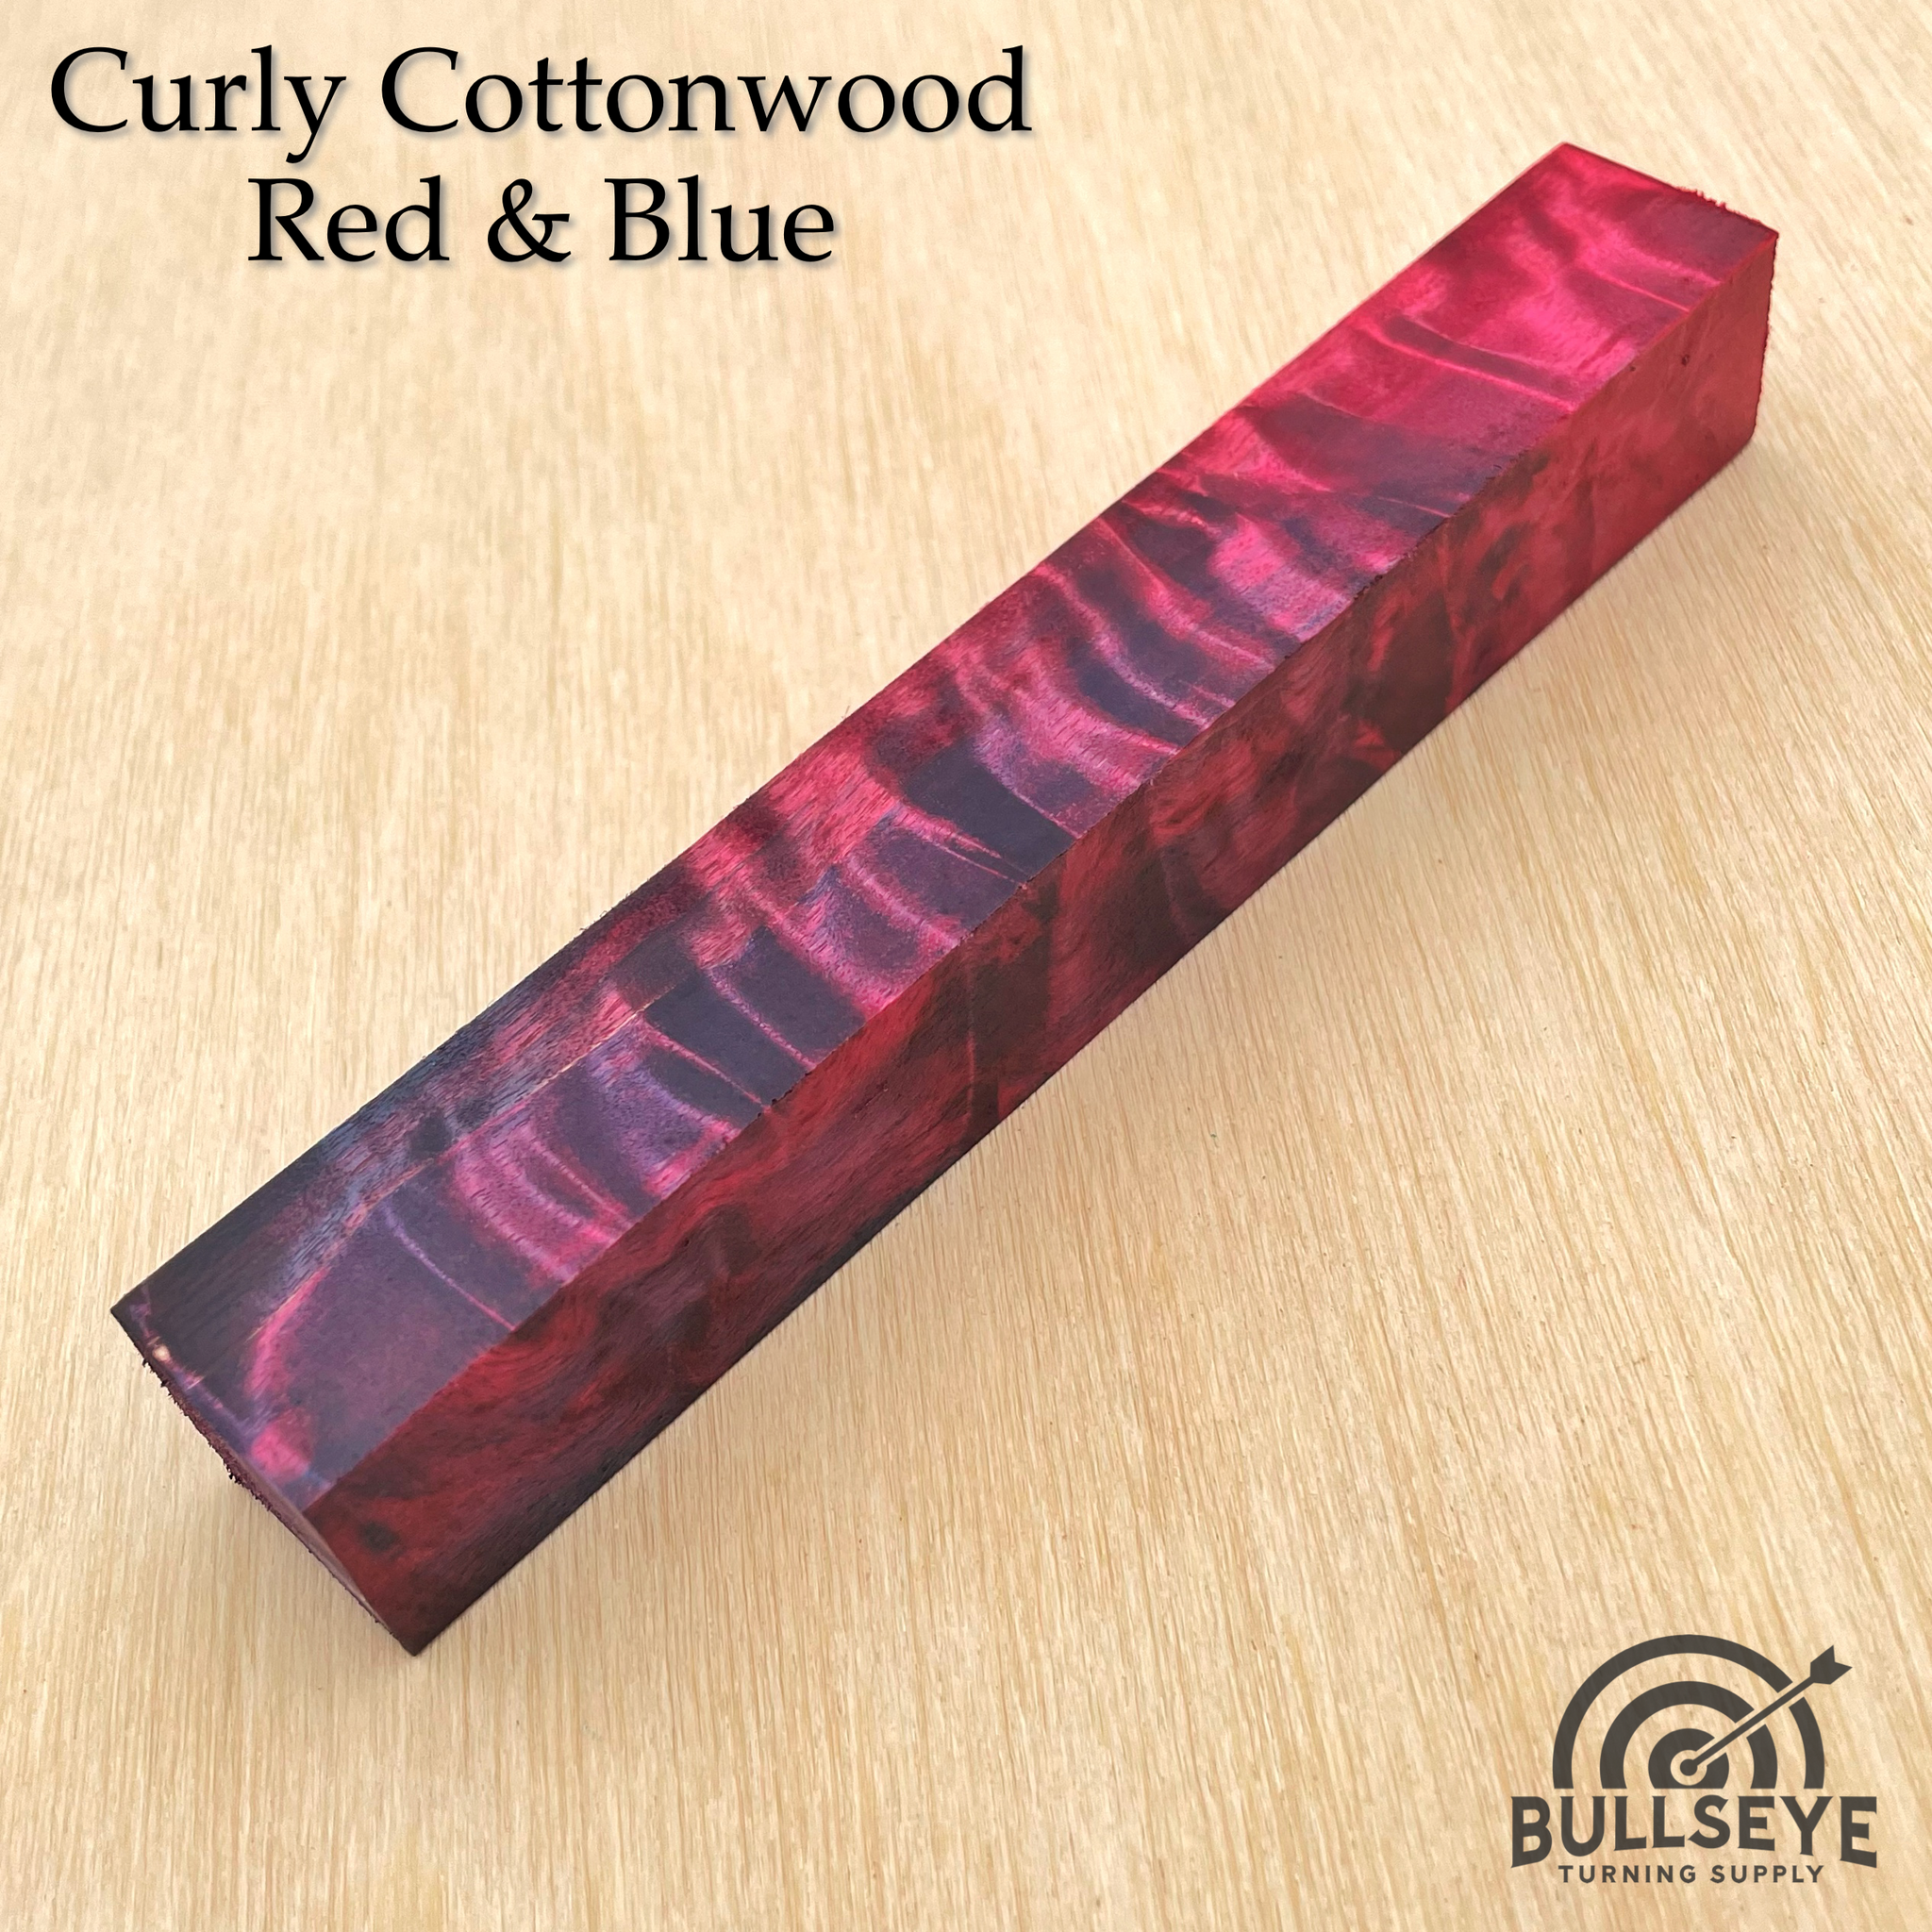 Curly Cottonwood | Double Dyed & Supply Stabilized – Bullseye Turning